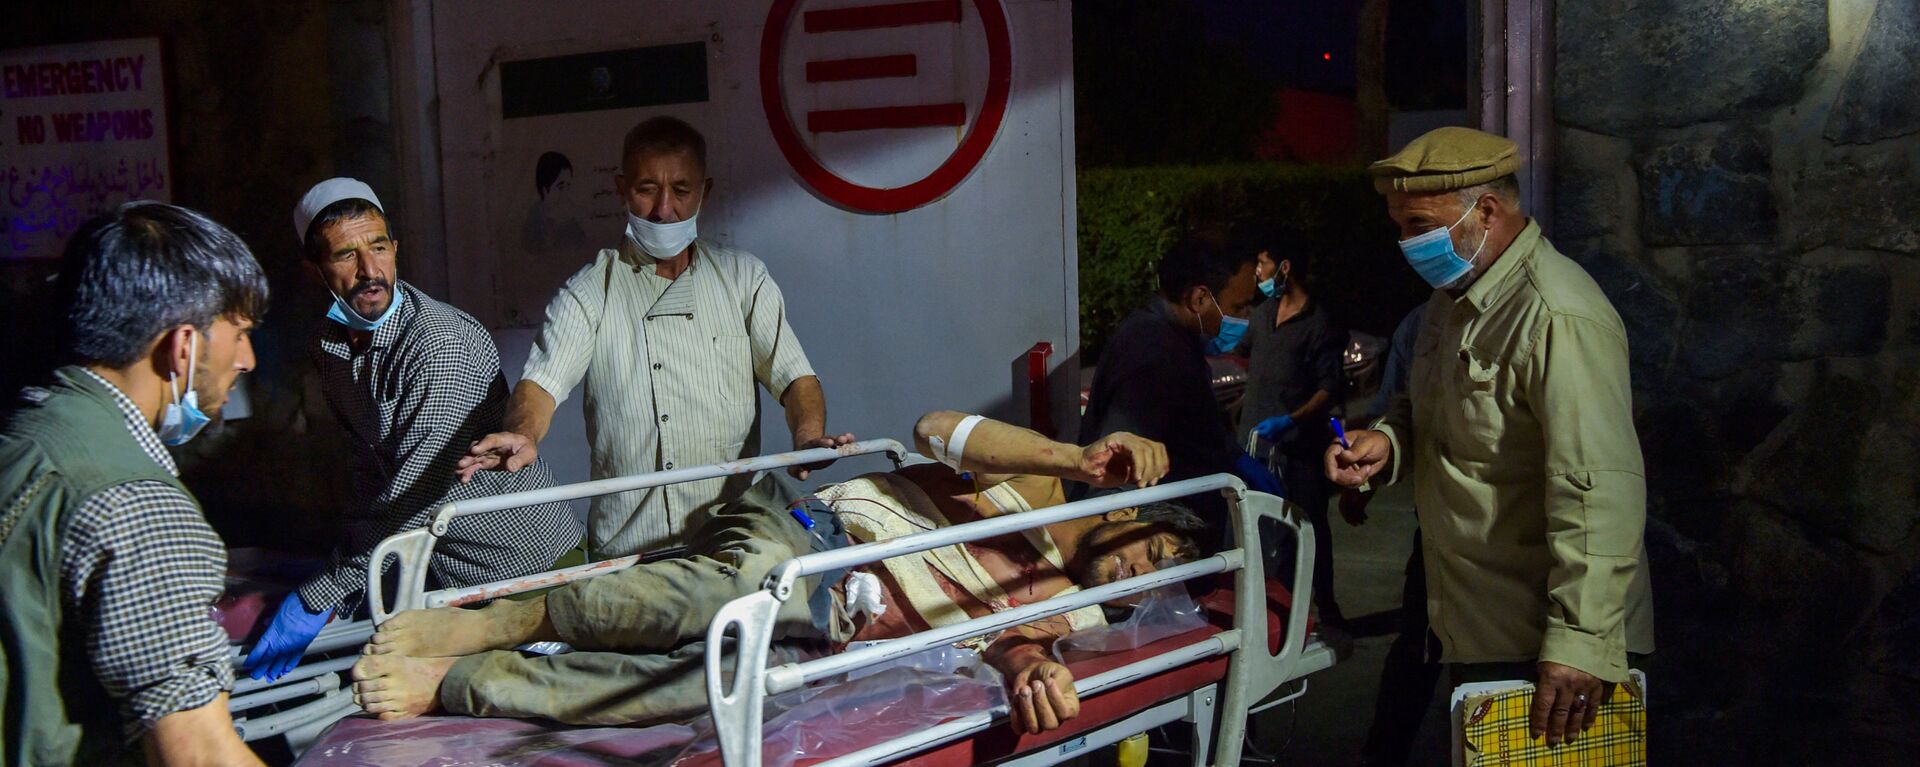 Медики помогают пострадавшим от двух мощных взрывов, произошедших в Кабуле - Sputnik Тоҷикистон, 1920, 29.08.2021